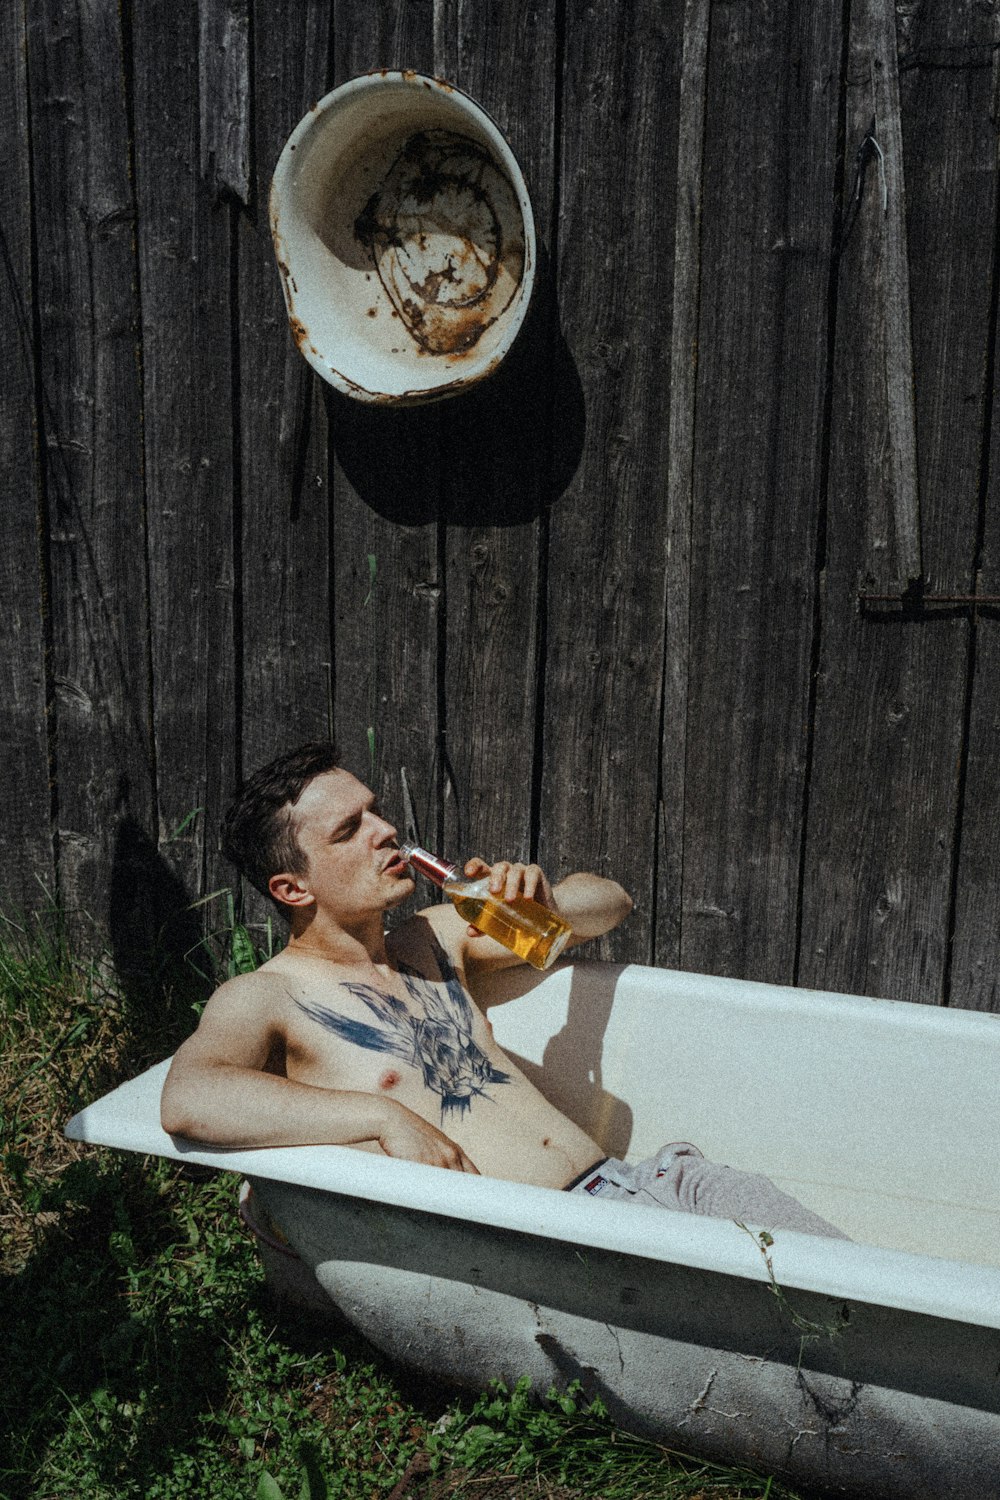 un uomo seduto in una vasca da bagno che beve una birra